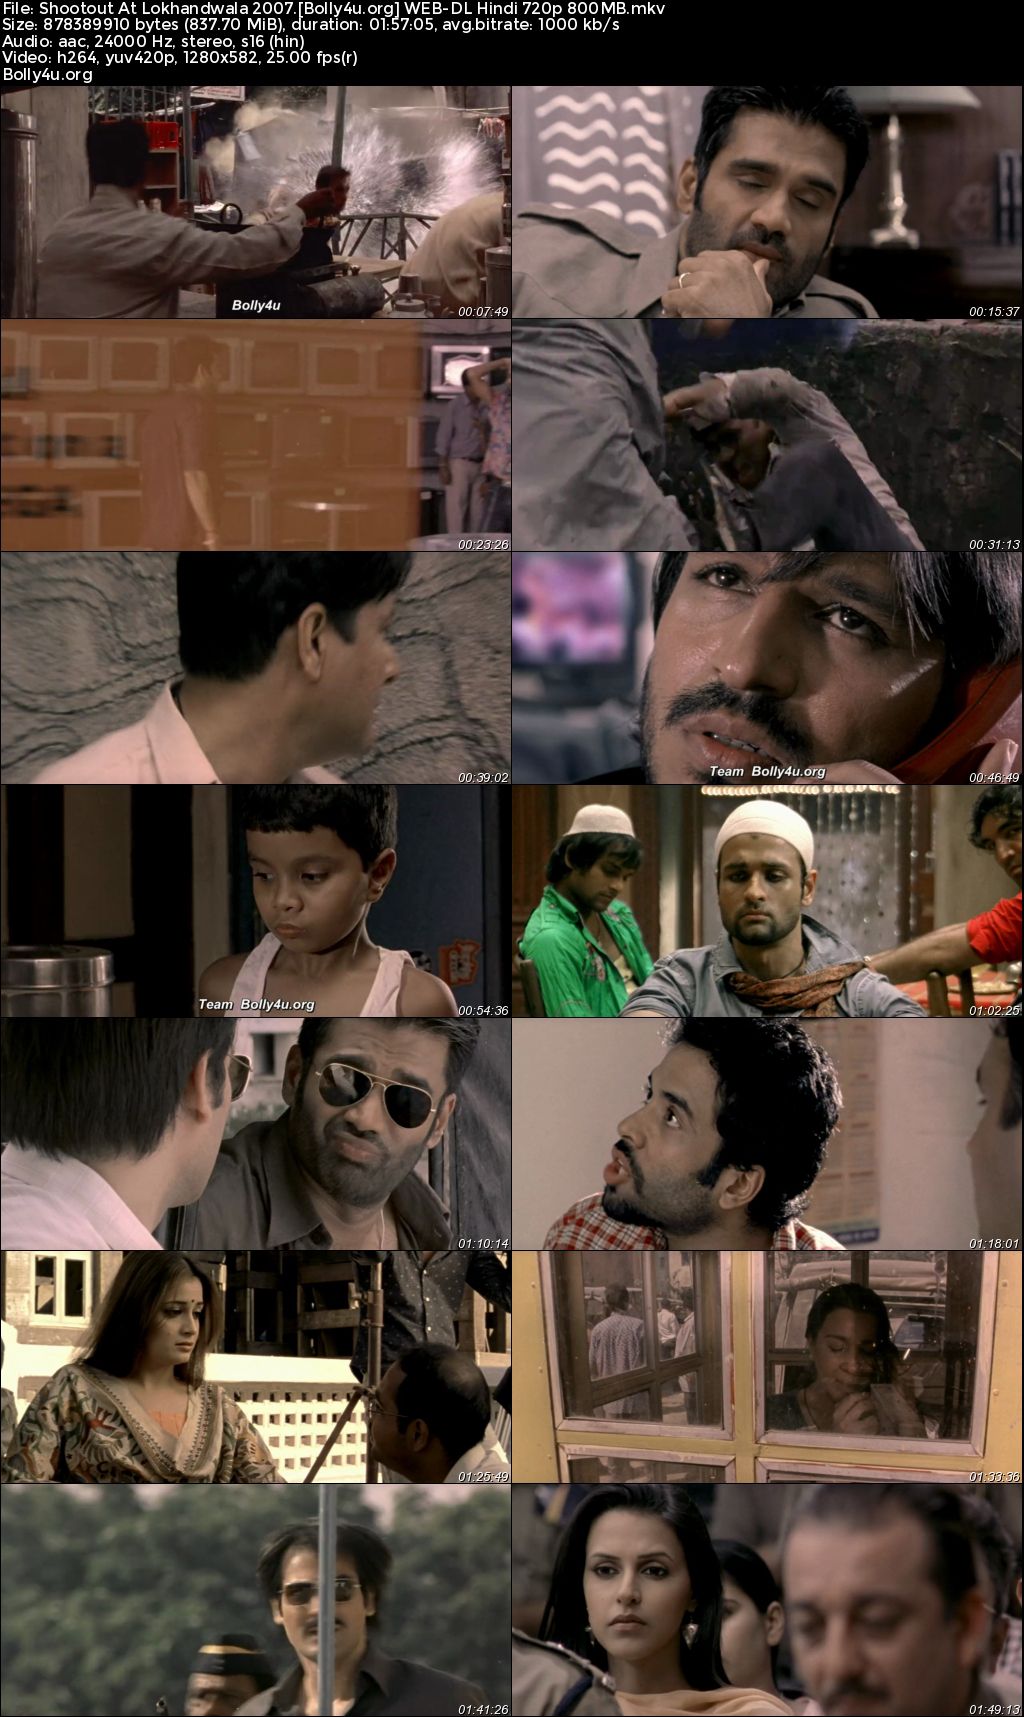 Shootout At Lokhandwala 2007 WEB-DL Hindi Full Movie Download 1080p 720p 480p